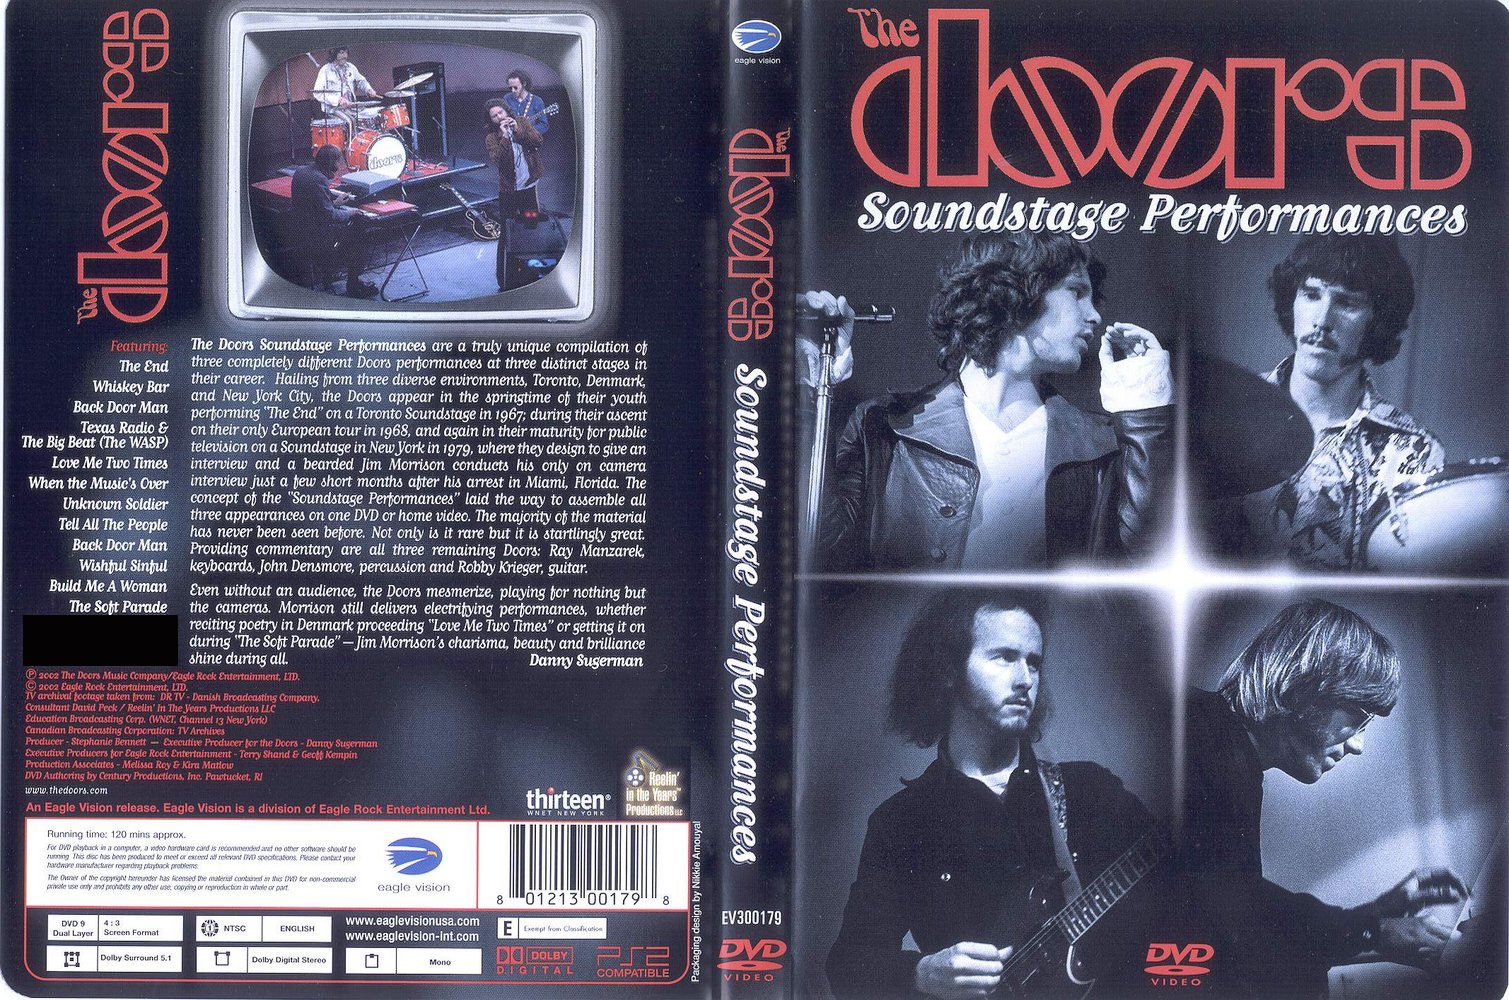 Jaquette DVD The Doors Soundstage Performances